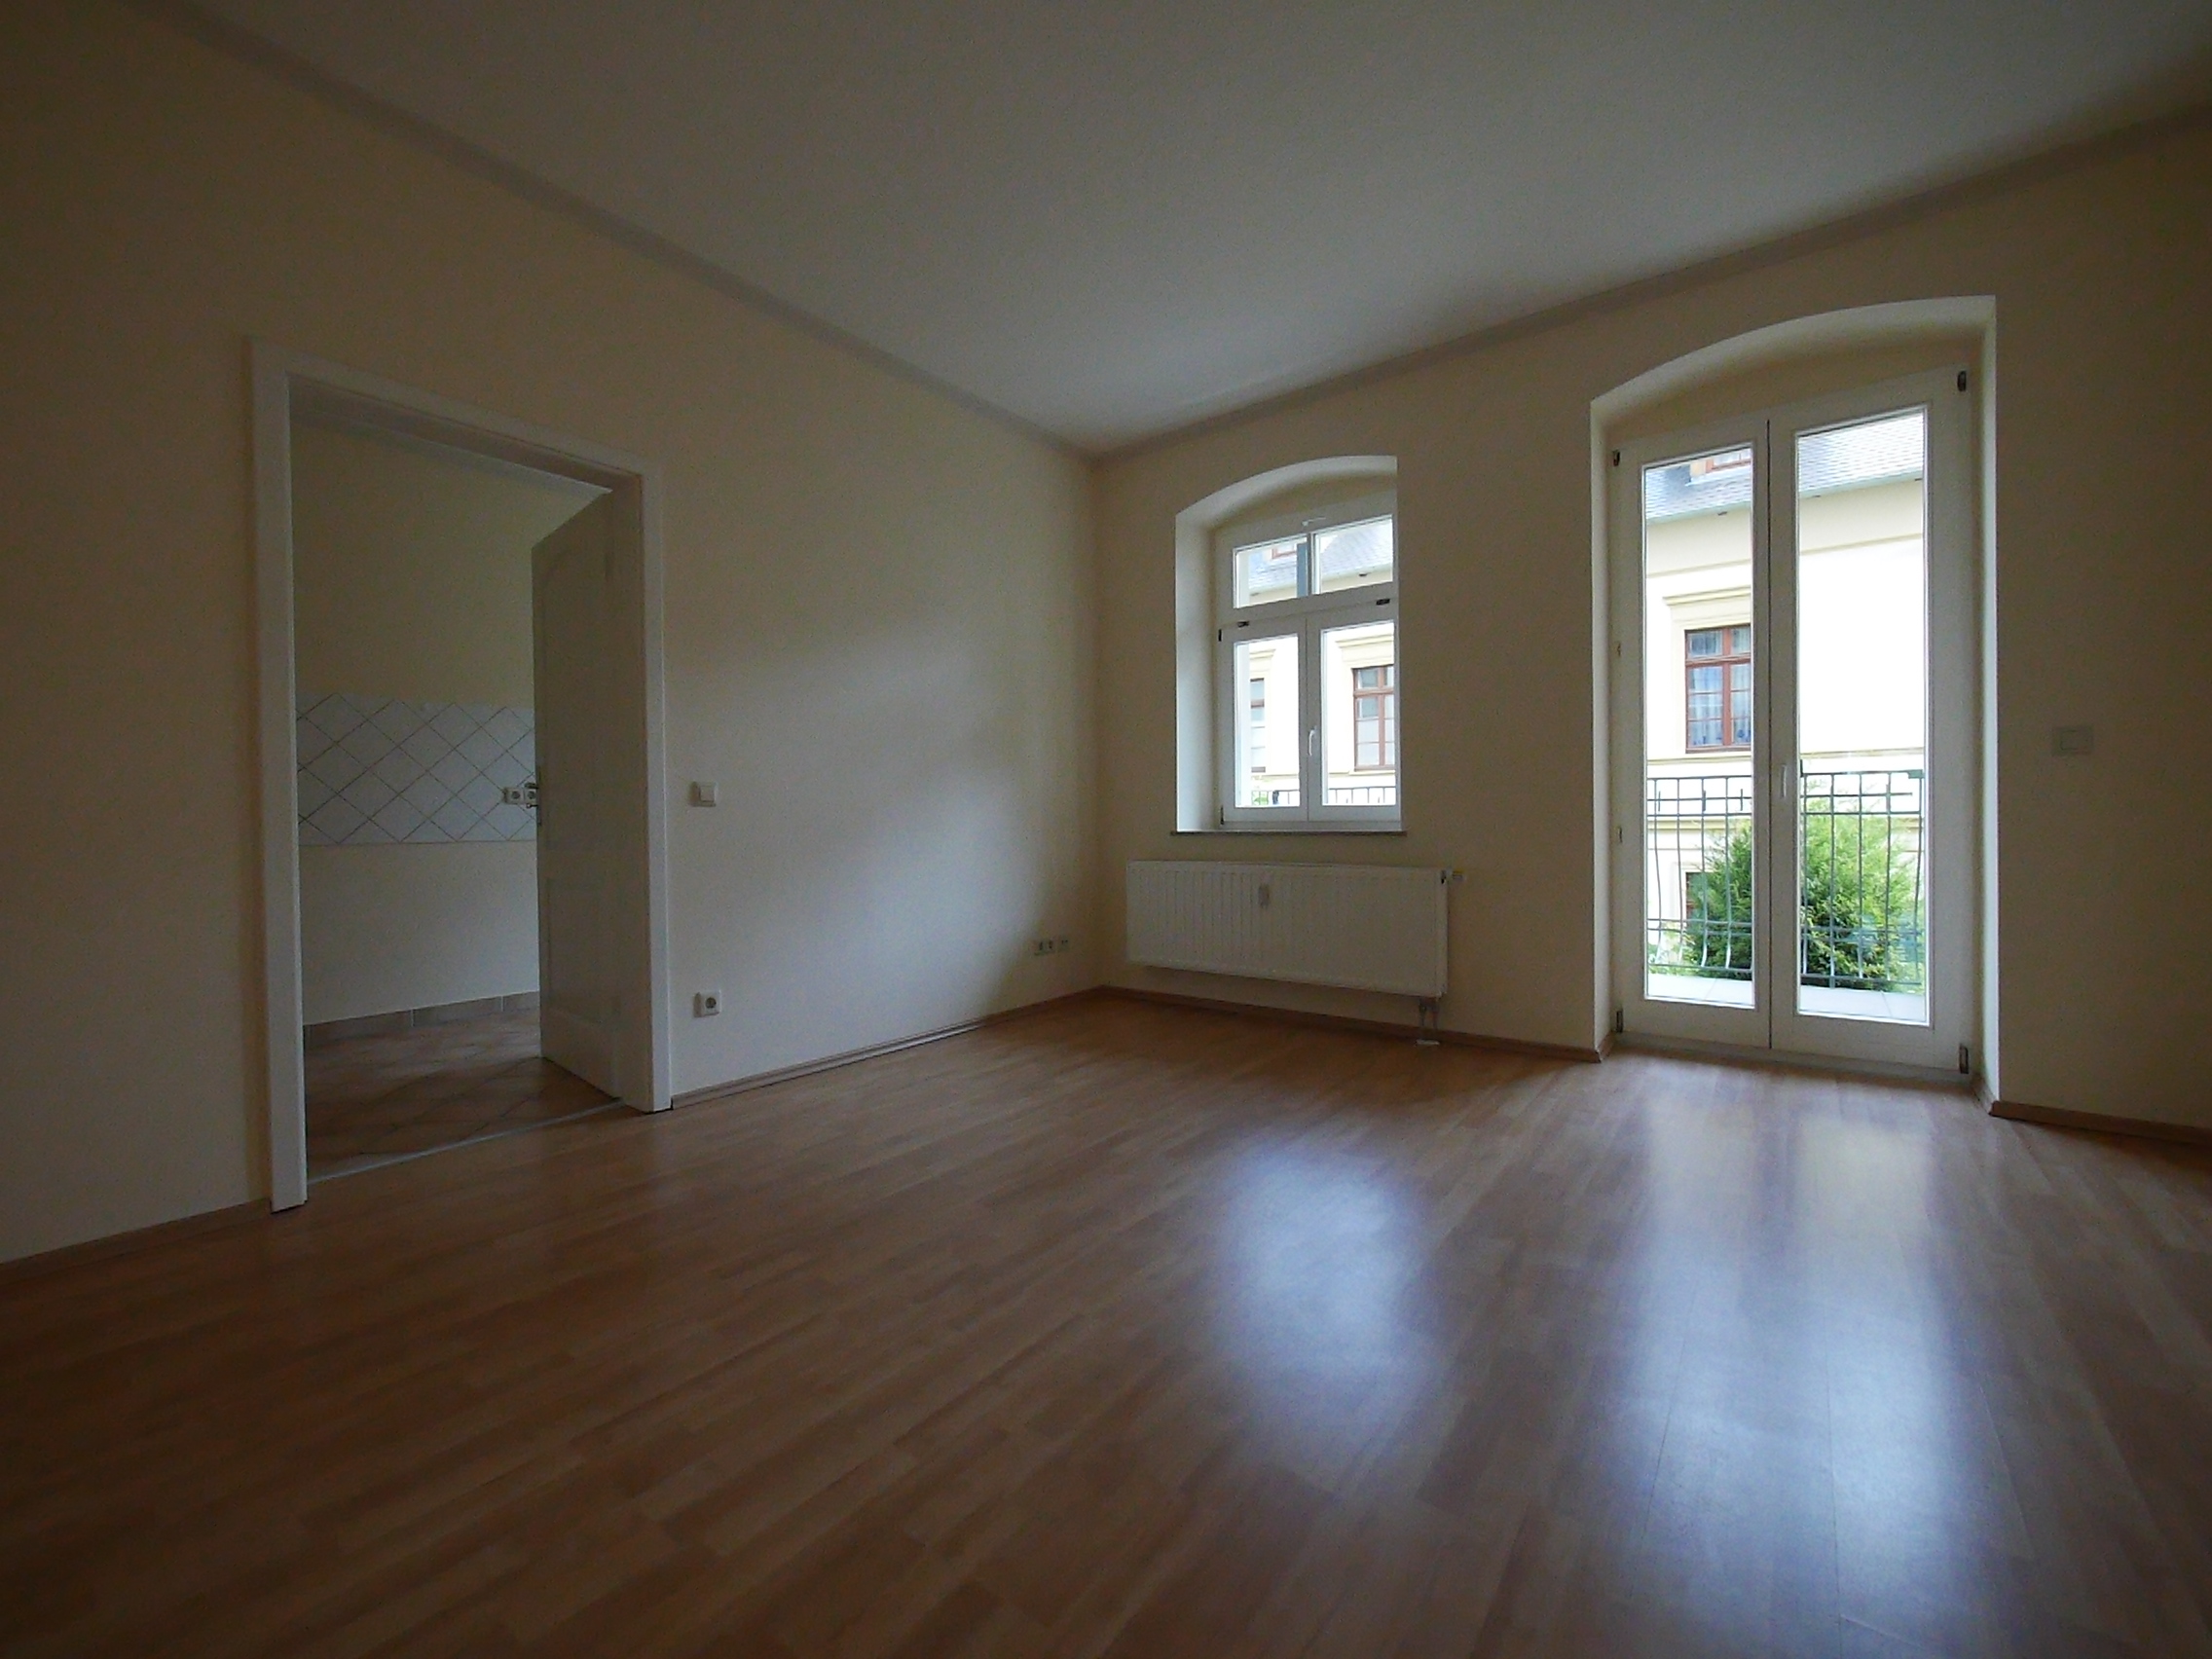 Mietwohnung: Vermietung von 3-Raum Wohnung in Görlitz, Emmerichstraße 21